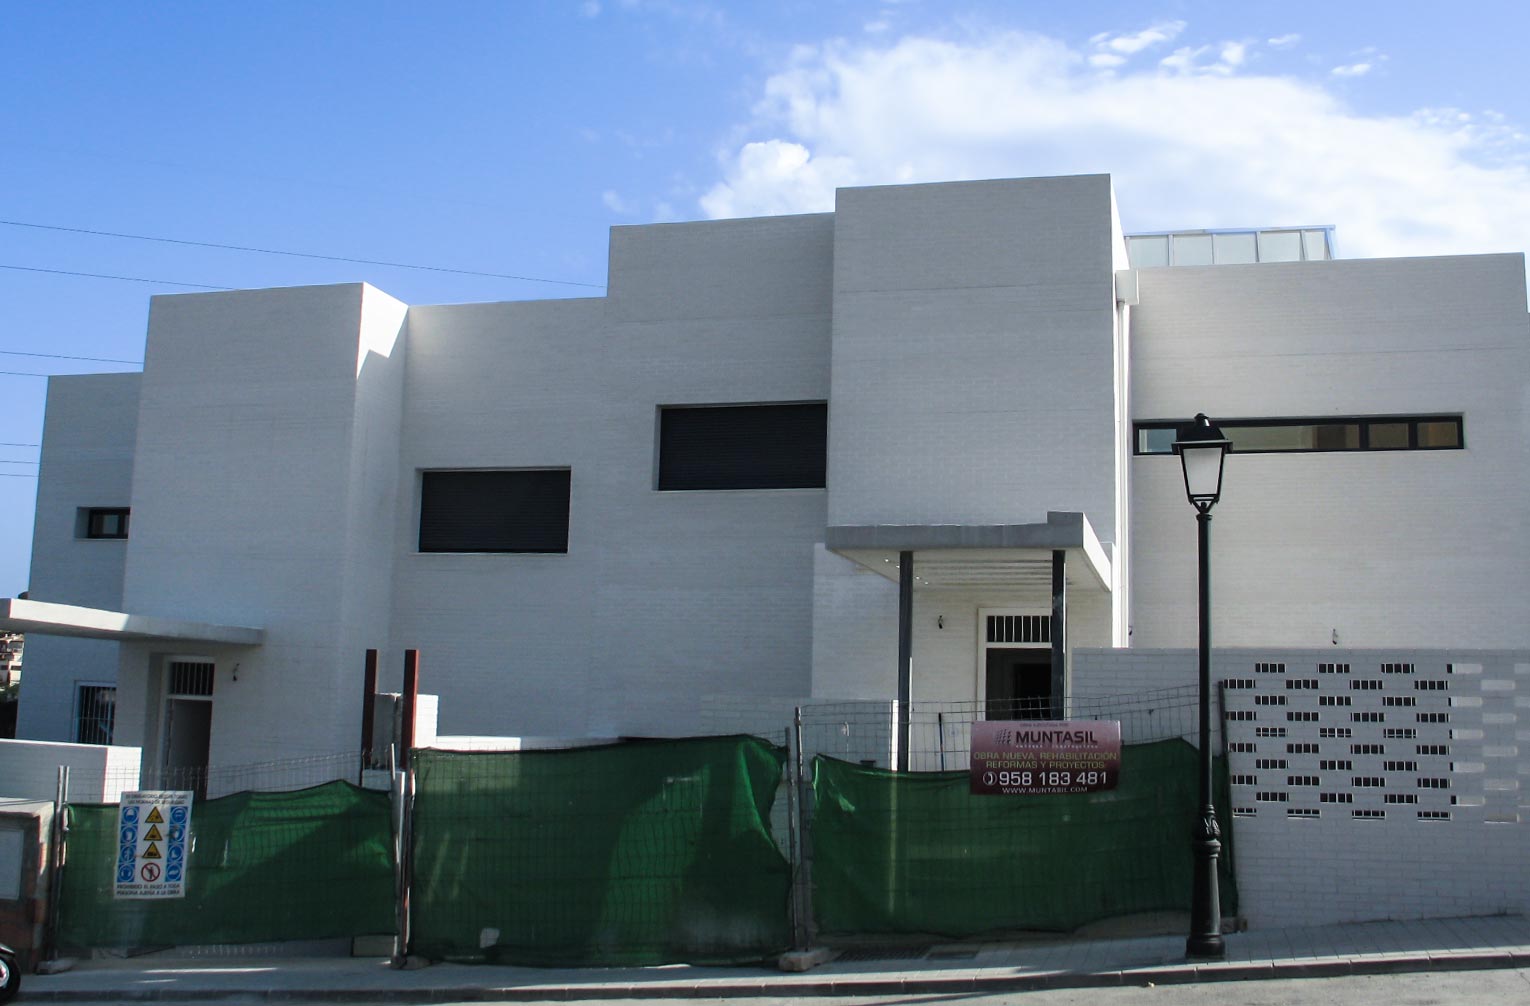 Exterior de vivienda nueva construida por Muntasil, empresa constructora en Granada